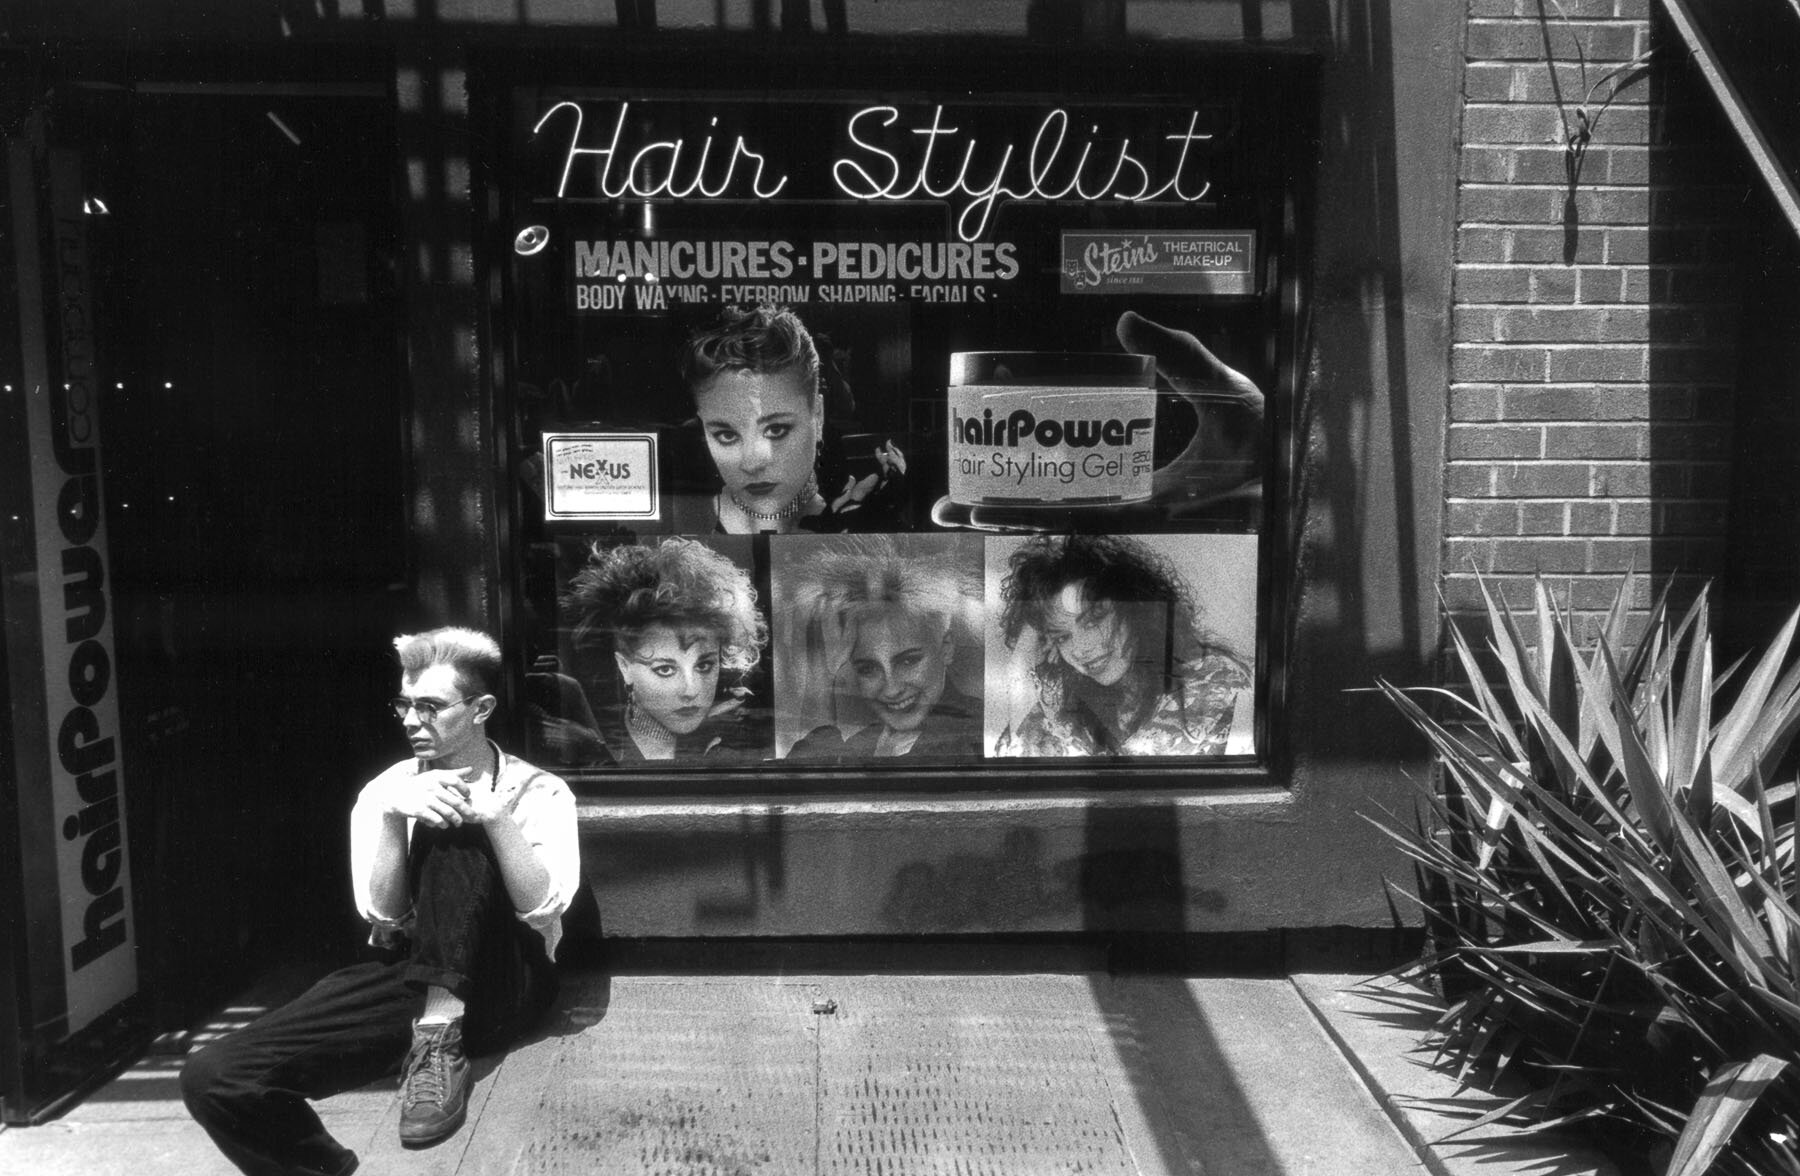 St. Marks Place hairstylist, East Village, Manhattan